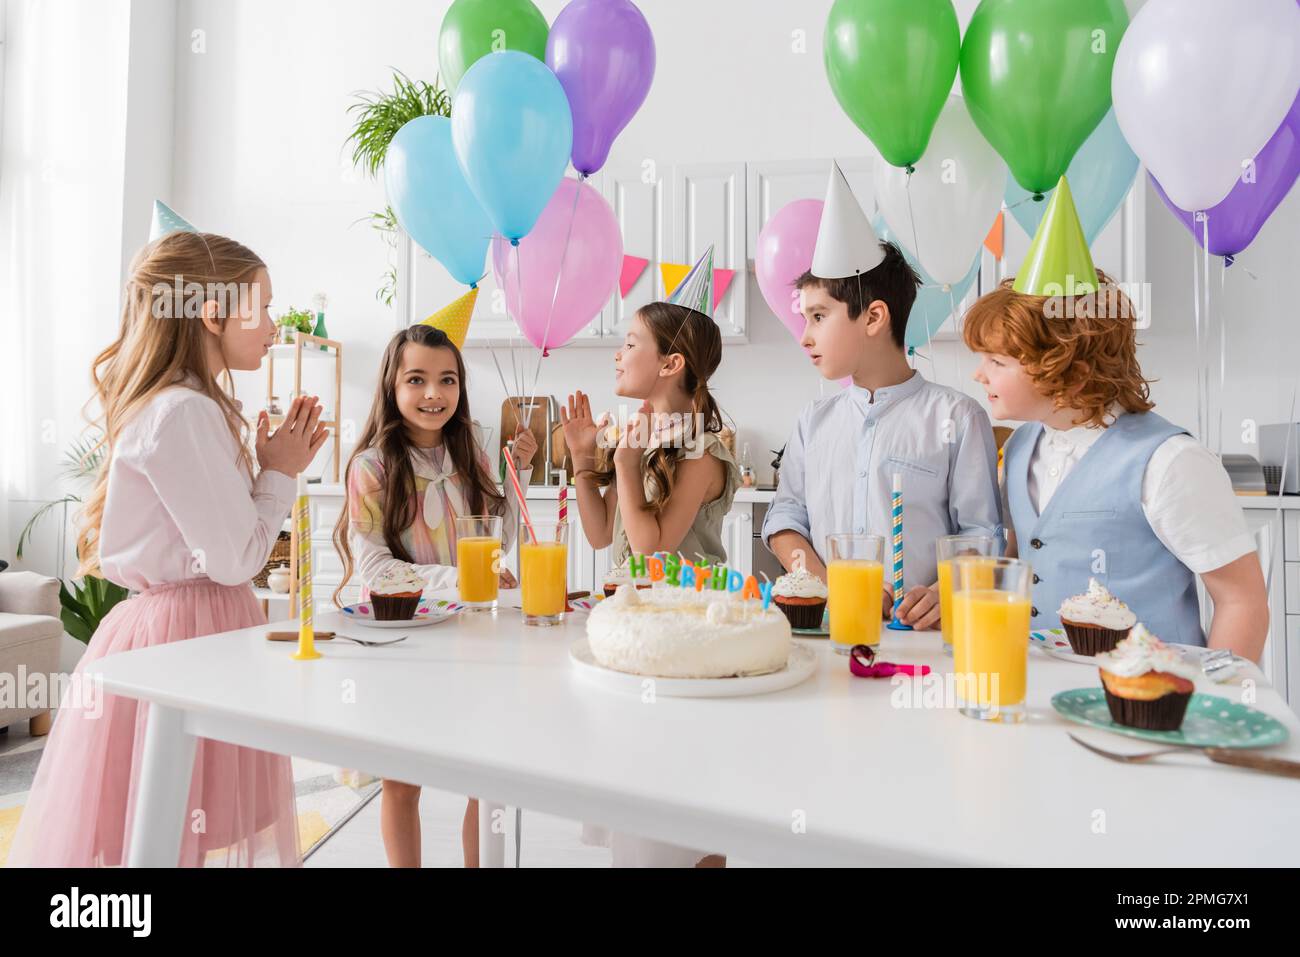 happy kids applapping mani e cantando felice canzone di compleanno accanto alla torta con candele e palloncini, immagine stock Foto Stock